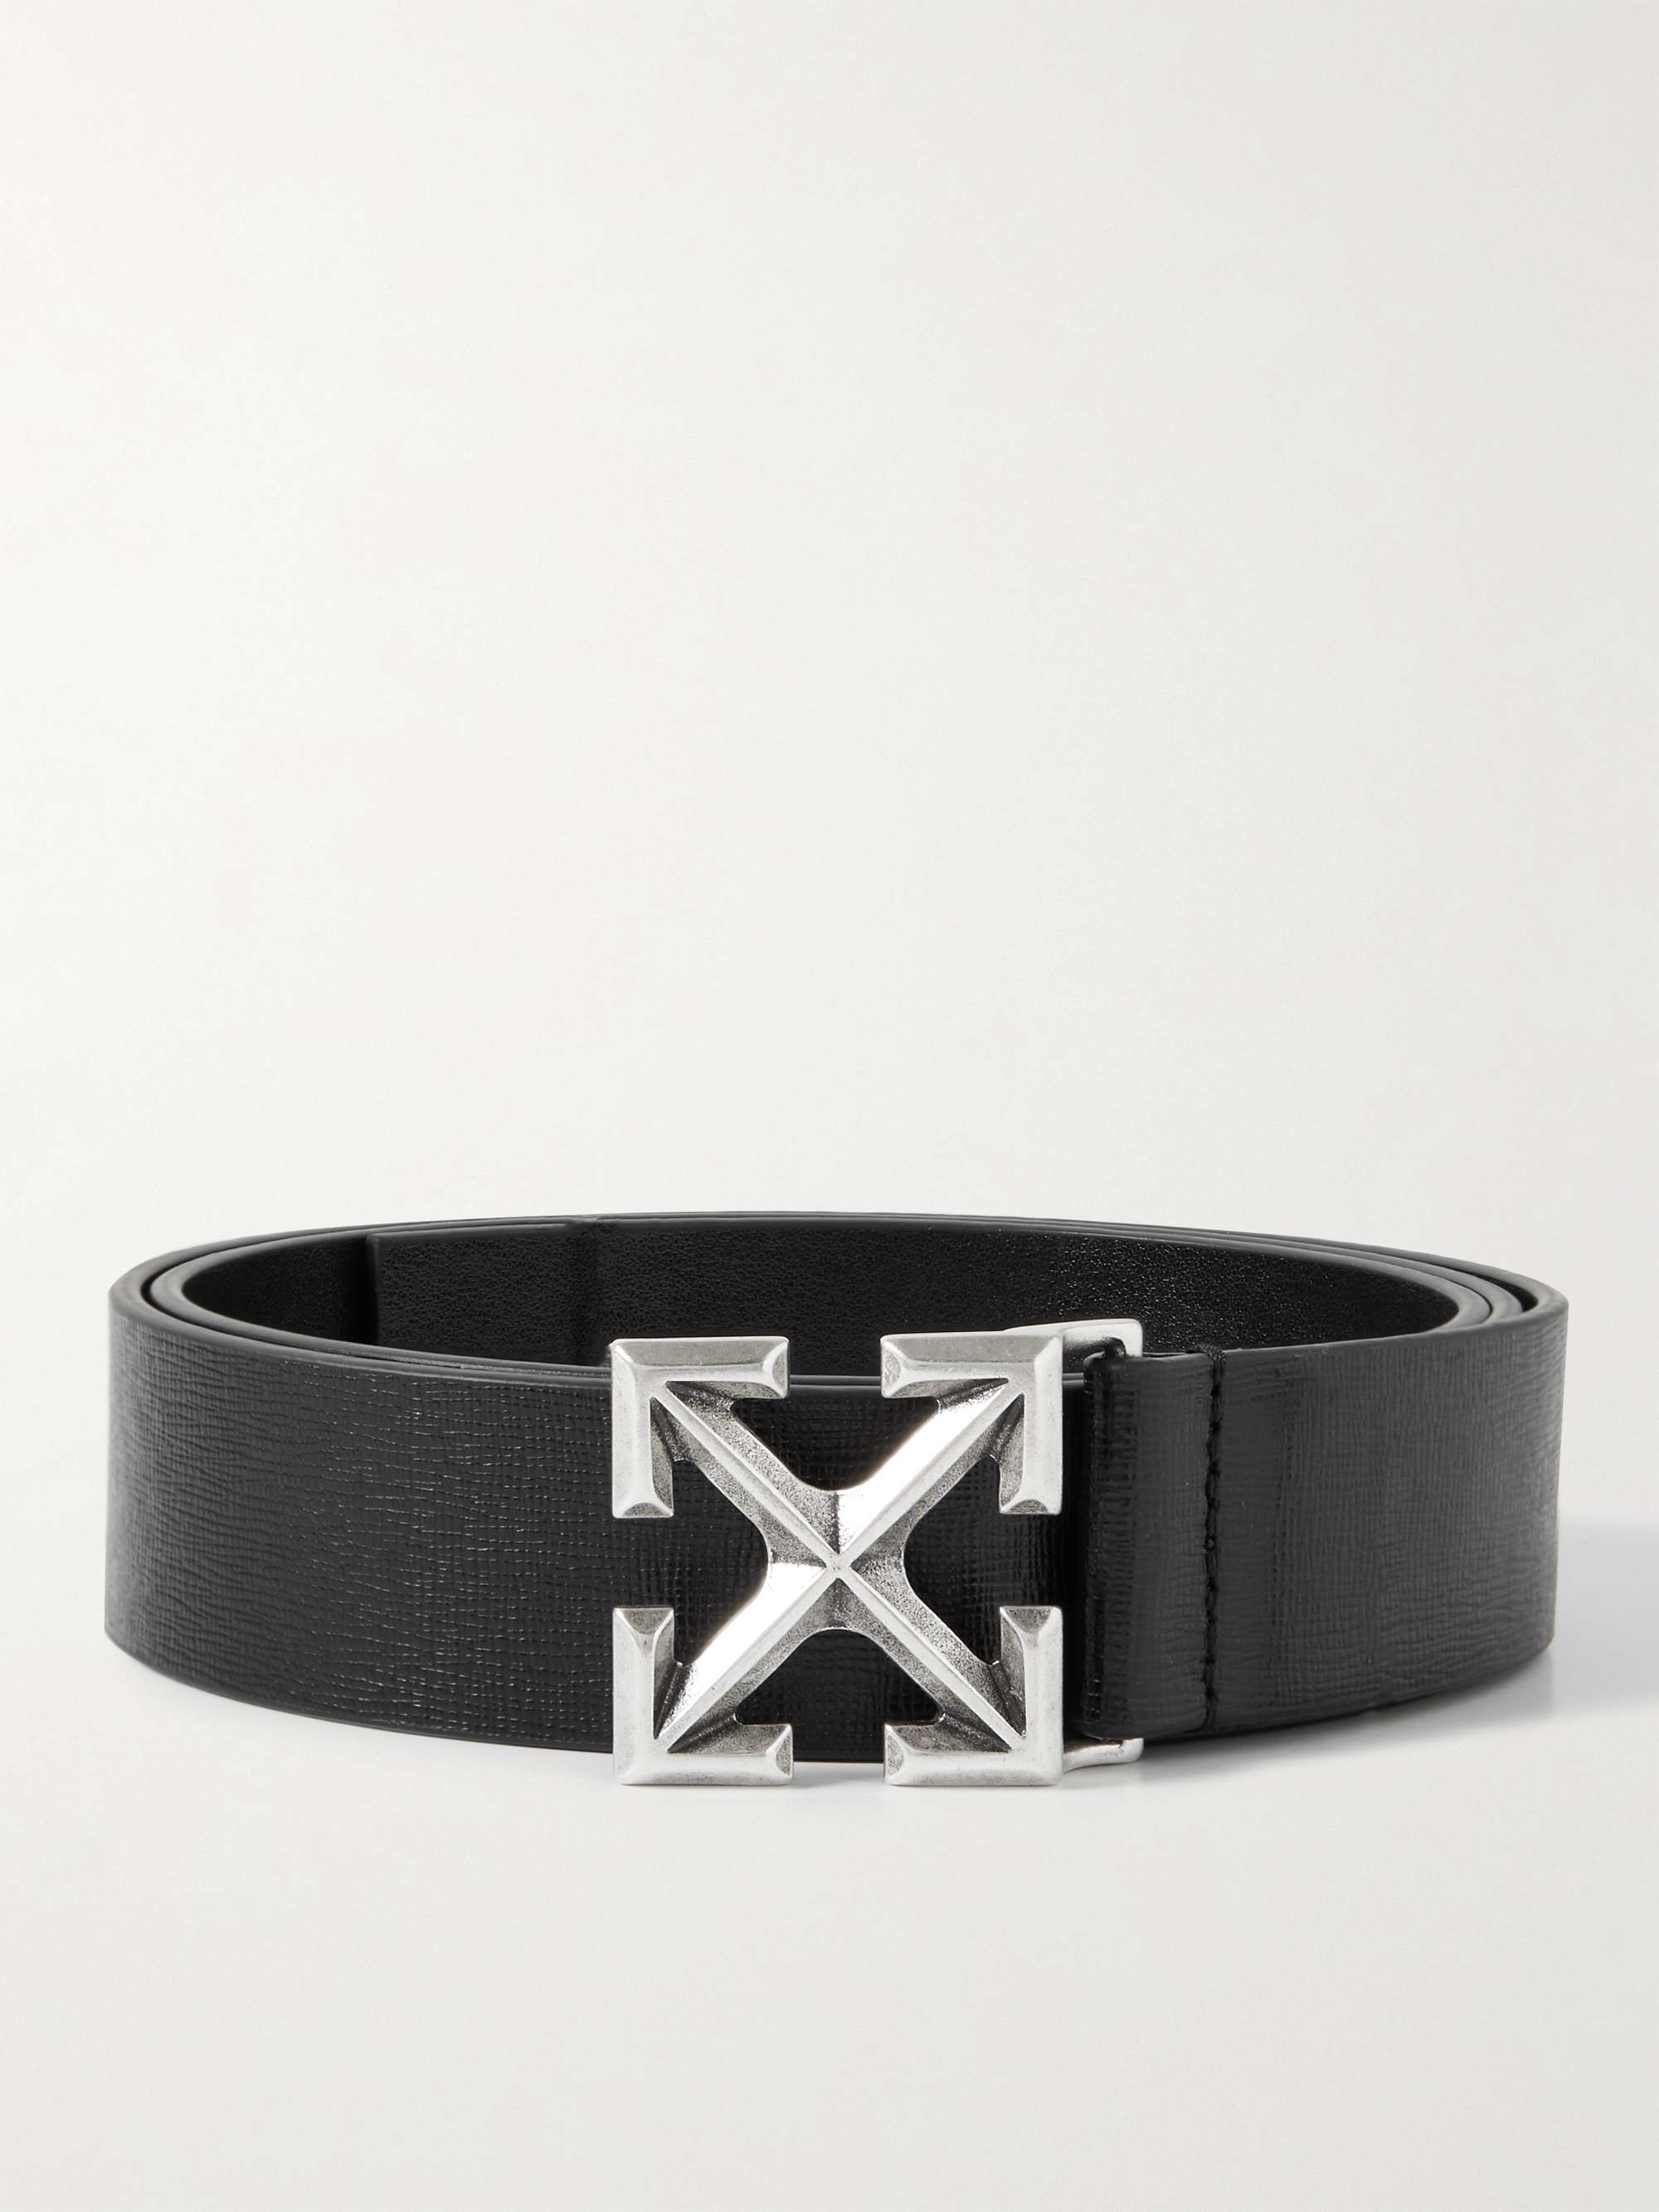 OFF-WHITE 3.5cm Cross-Grain Leather Belt for Men | MR PORTER